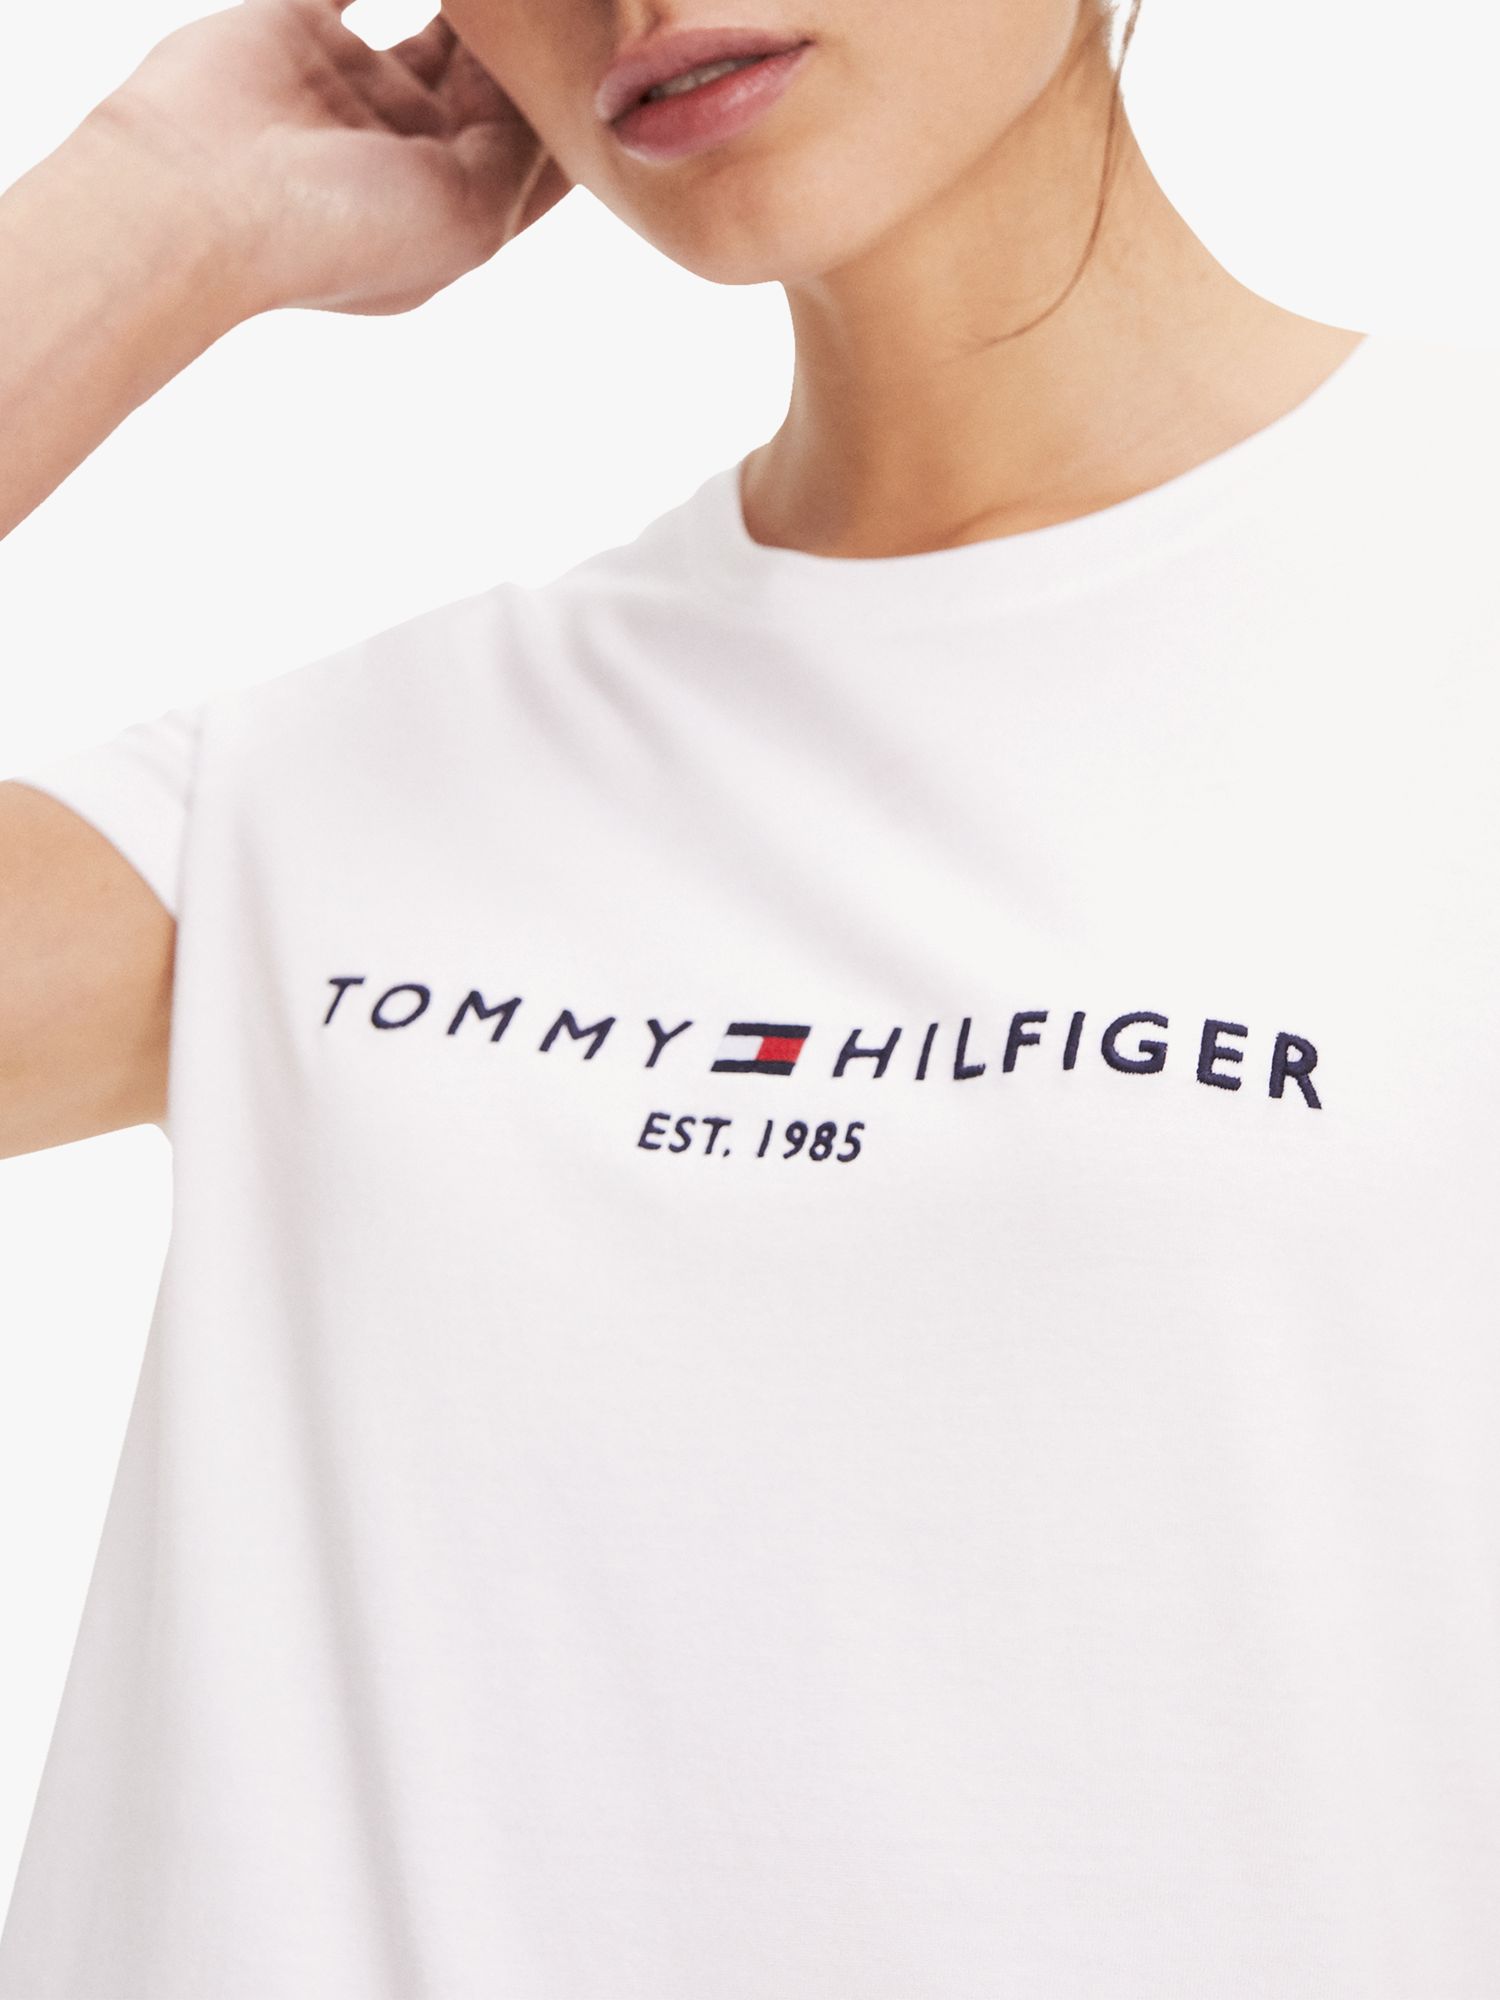 tommy hilfiger women's logo t shirt